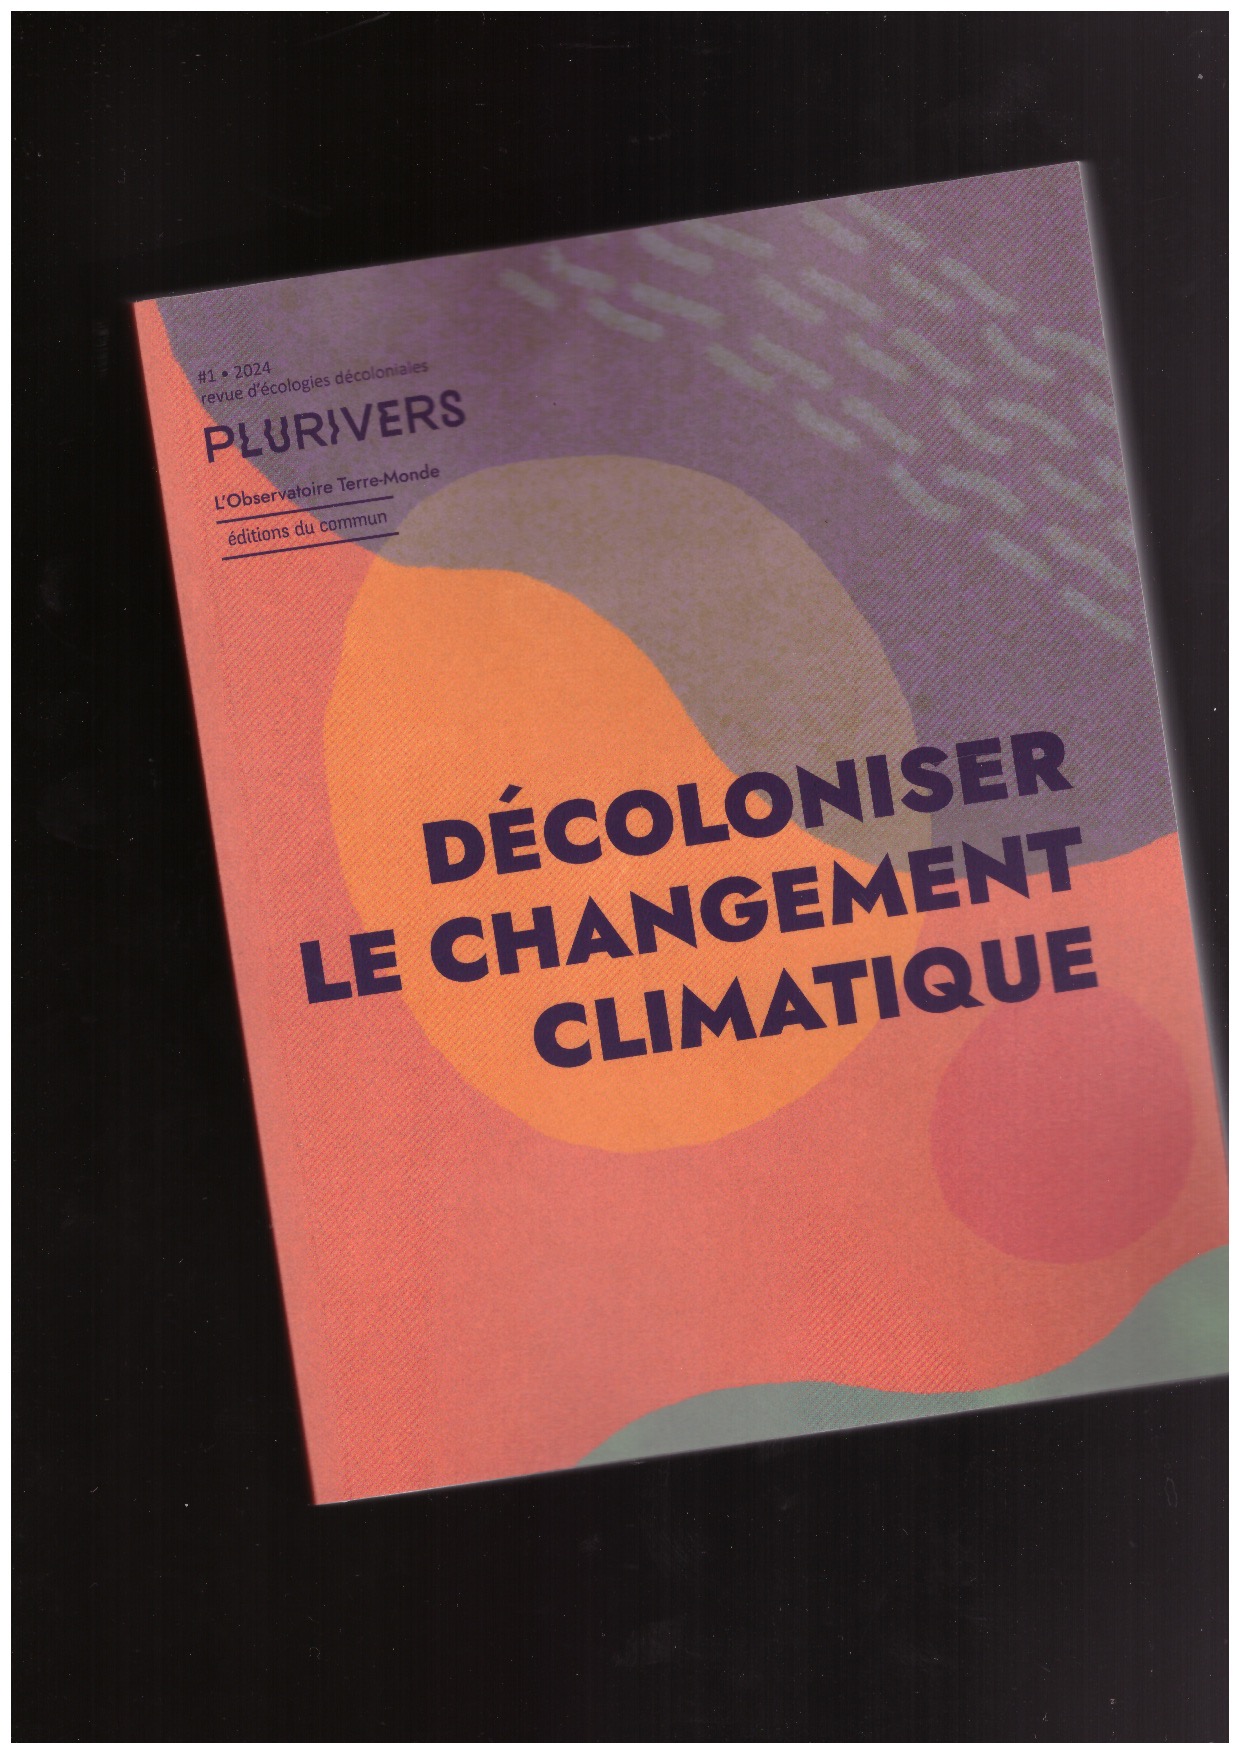 CHESNAIS, Aude; FERDINAND, Malcom; MOLINIÉ, Erwan; SHEIKH, Shela; THIANN-BO MOREL, Marie - Plurivers #1 (Février 2024) : Décoloniser le changement climatique